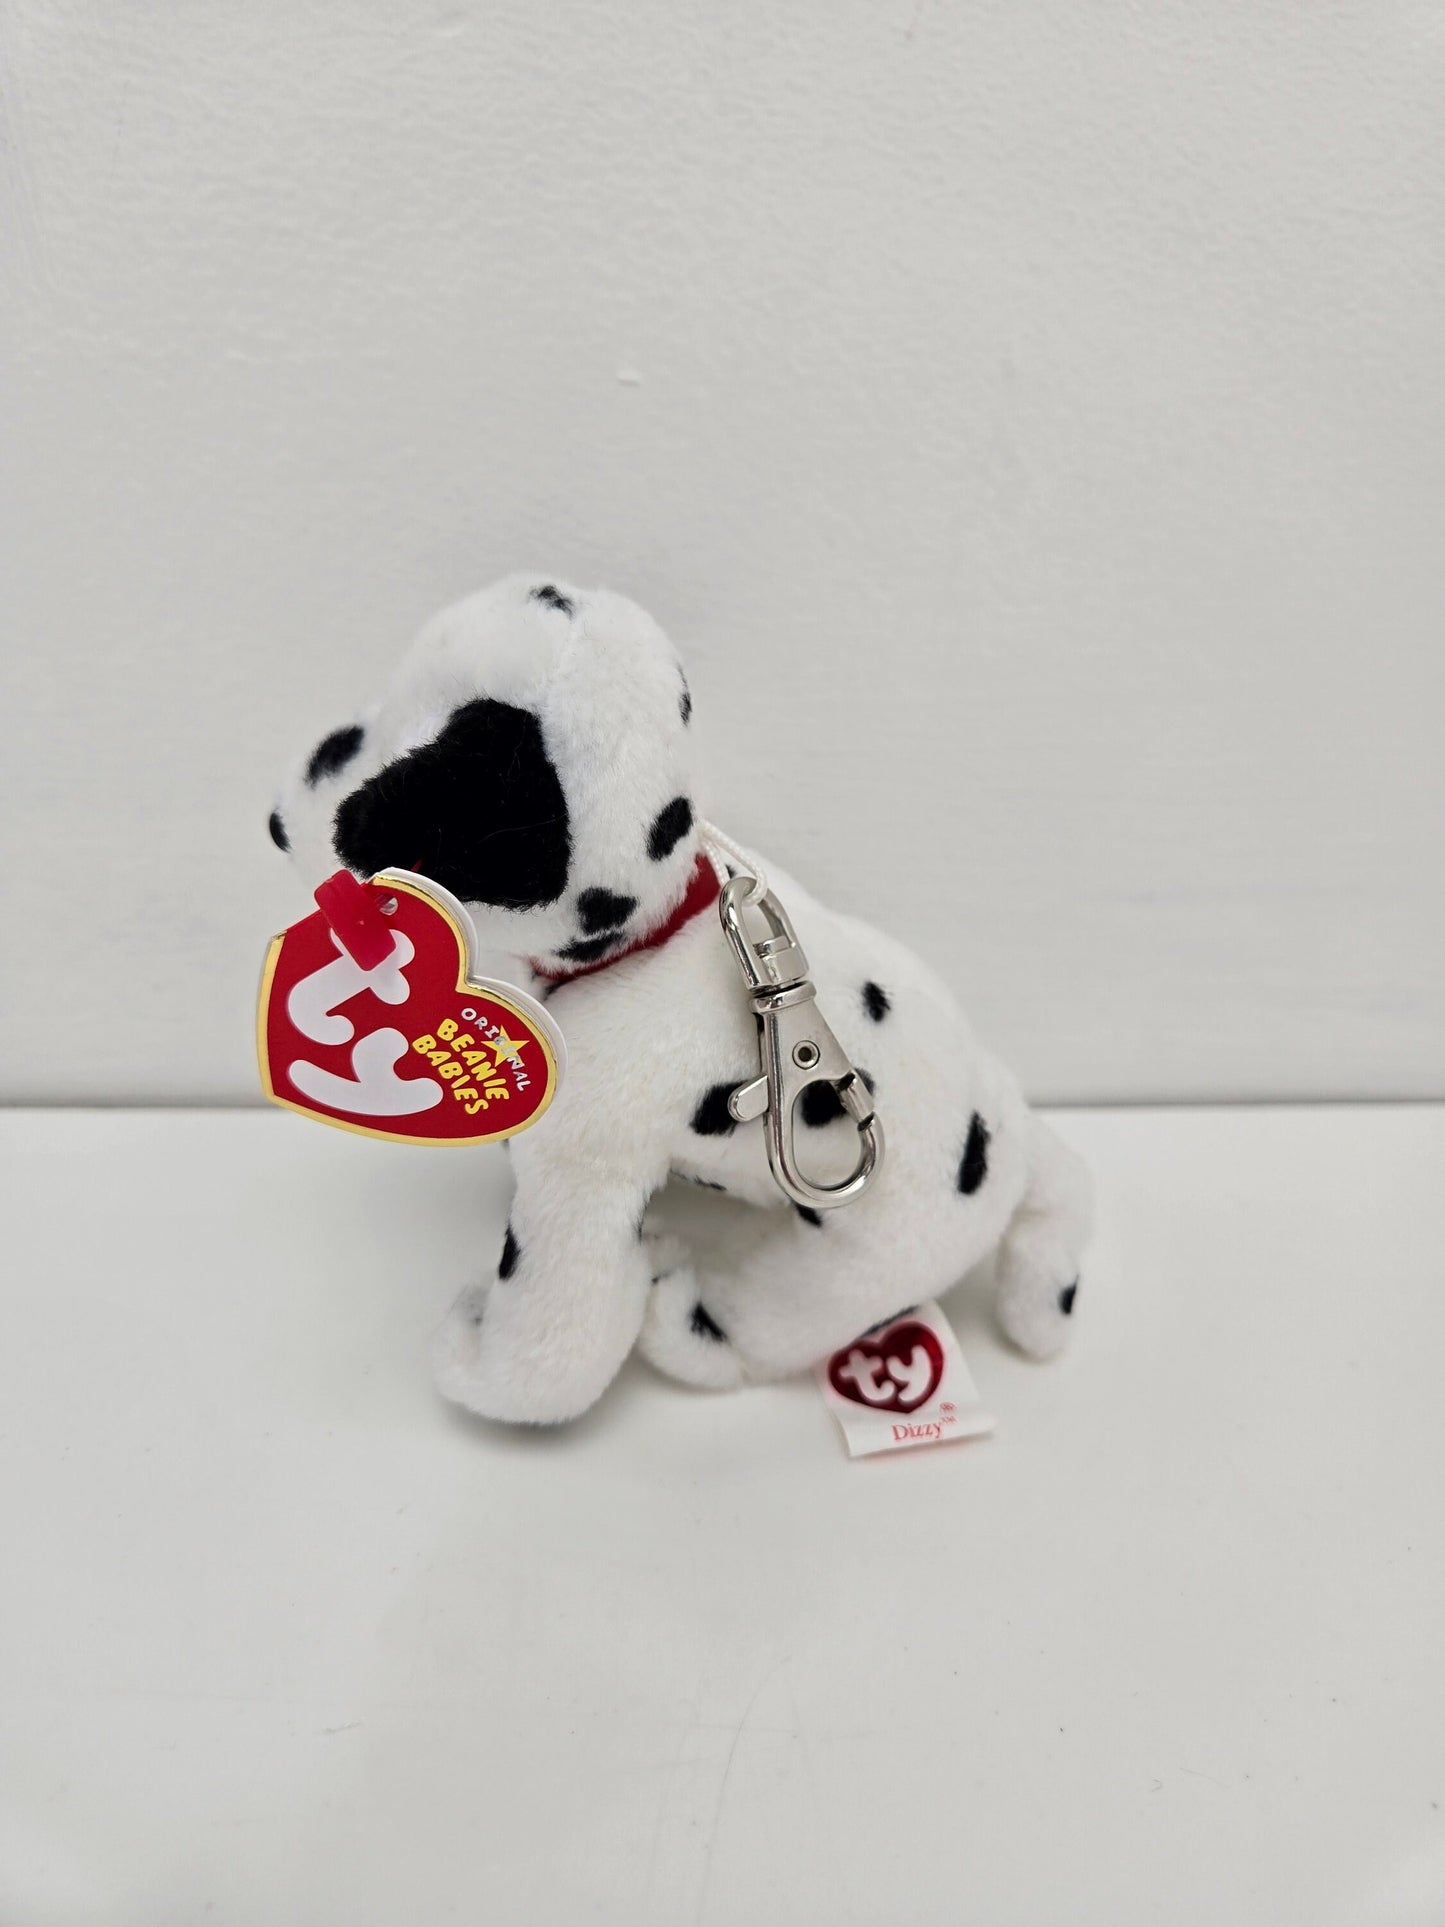 Ty *Keychain* Beanie Baby “Dizzy” the Dalmatian Dog - SMALL Metal Key Clip (4 inch)